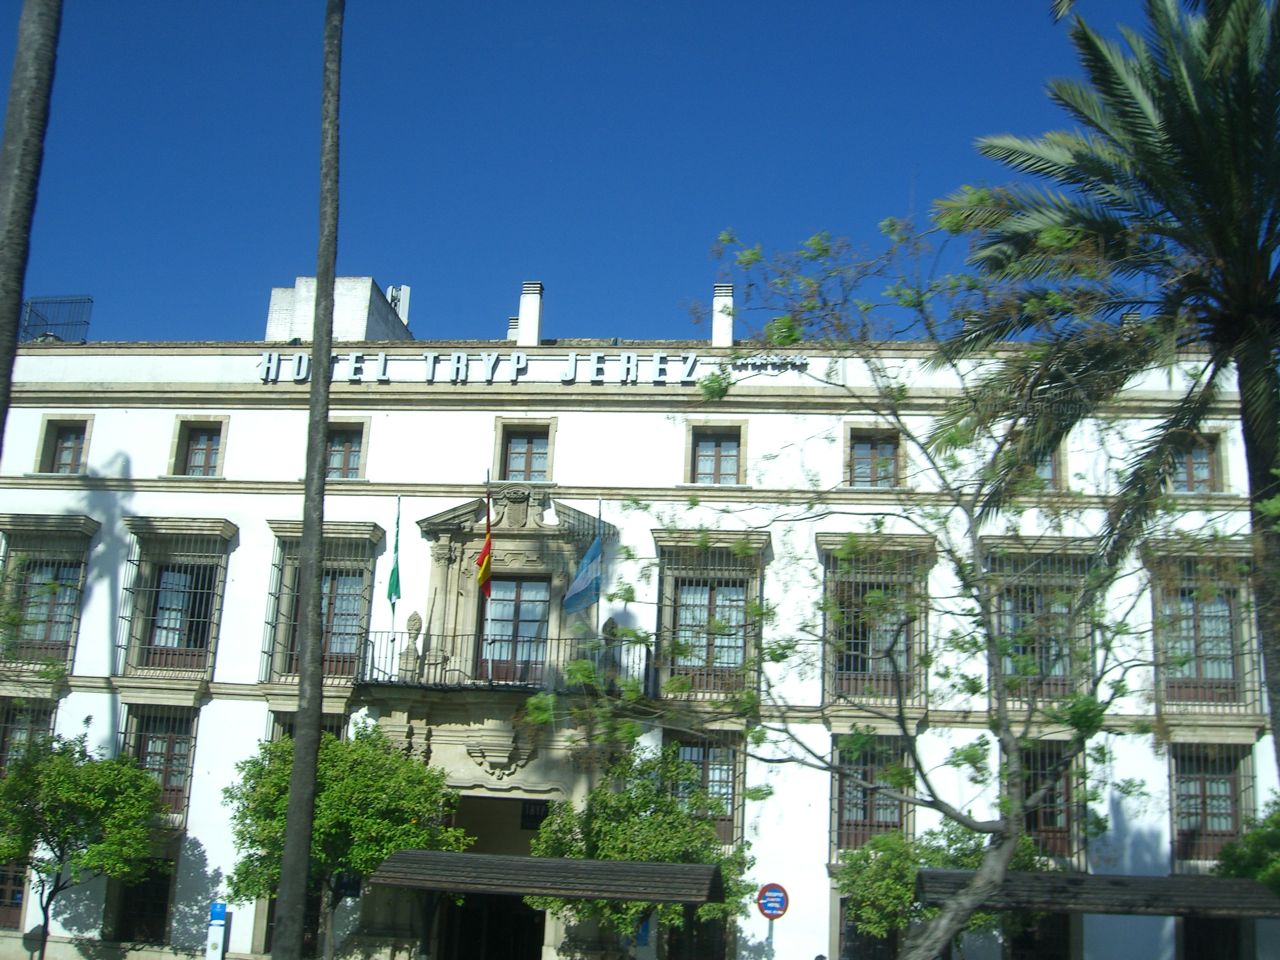 Cadiz Tryp Jerez Hotel